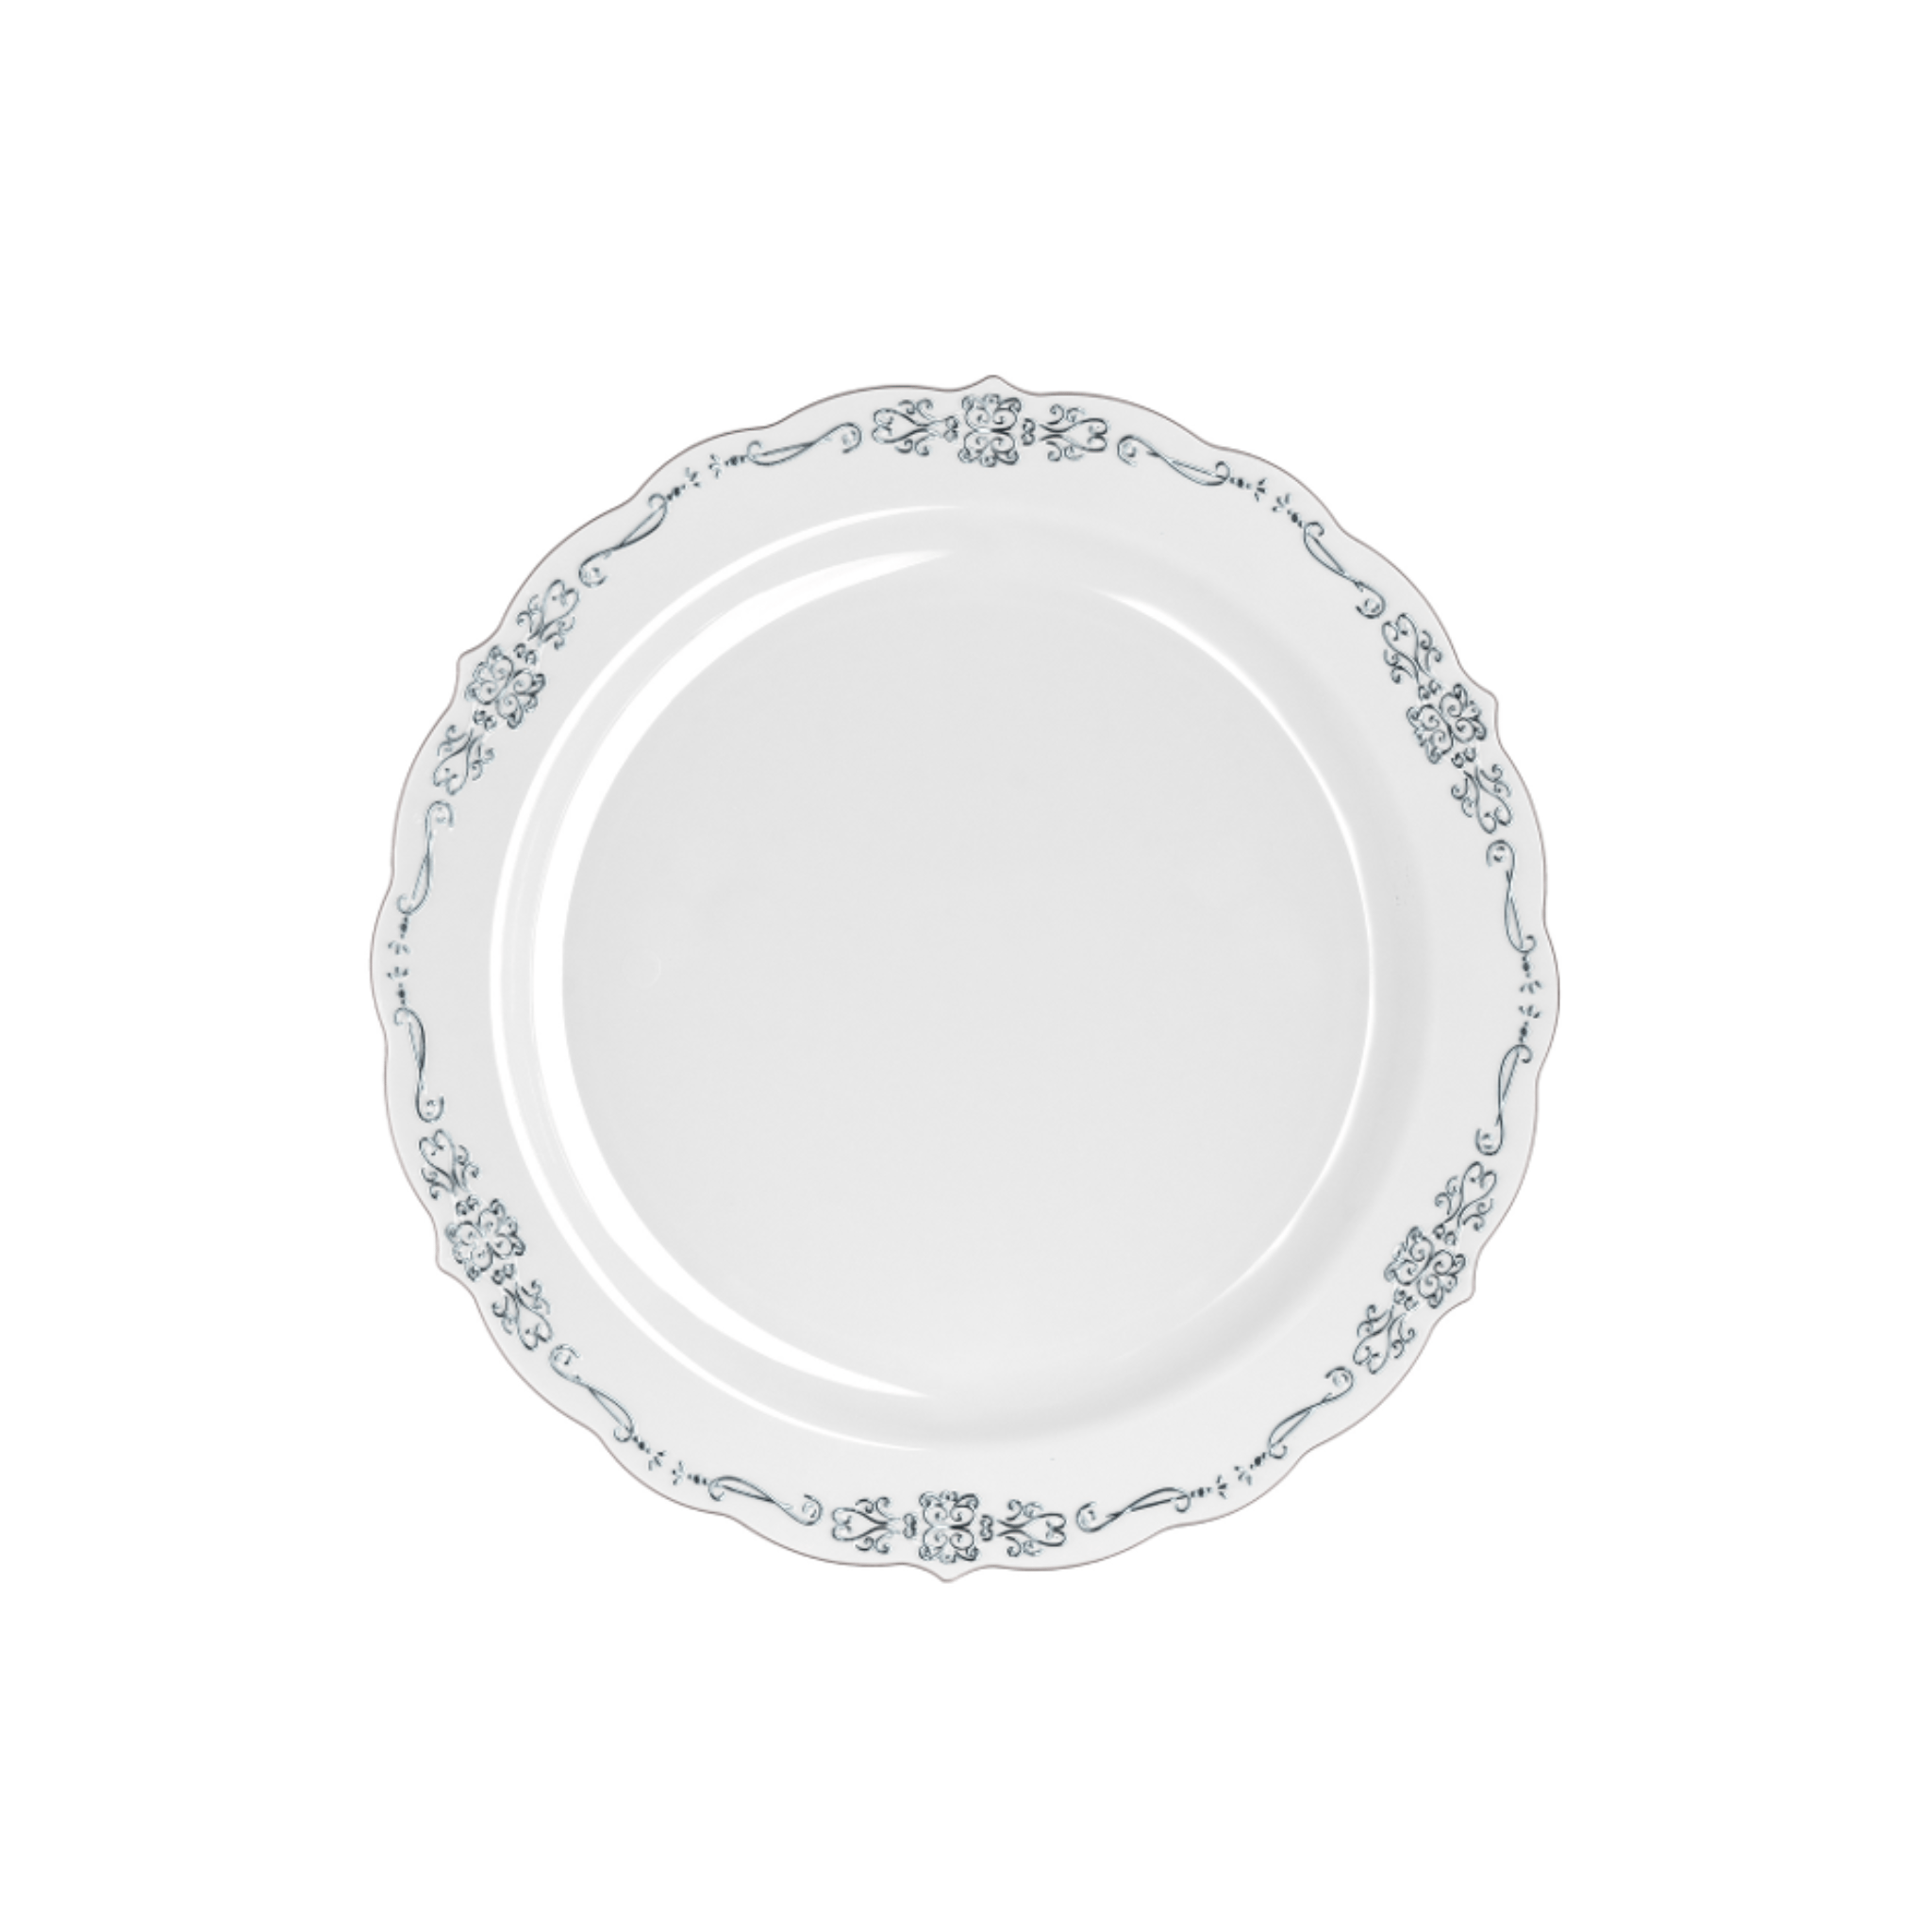 7.5" Gray / Silver Victorian Design Plastic Plates (120 Count)